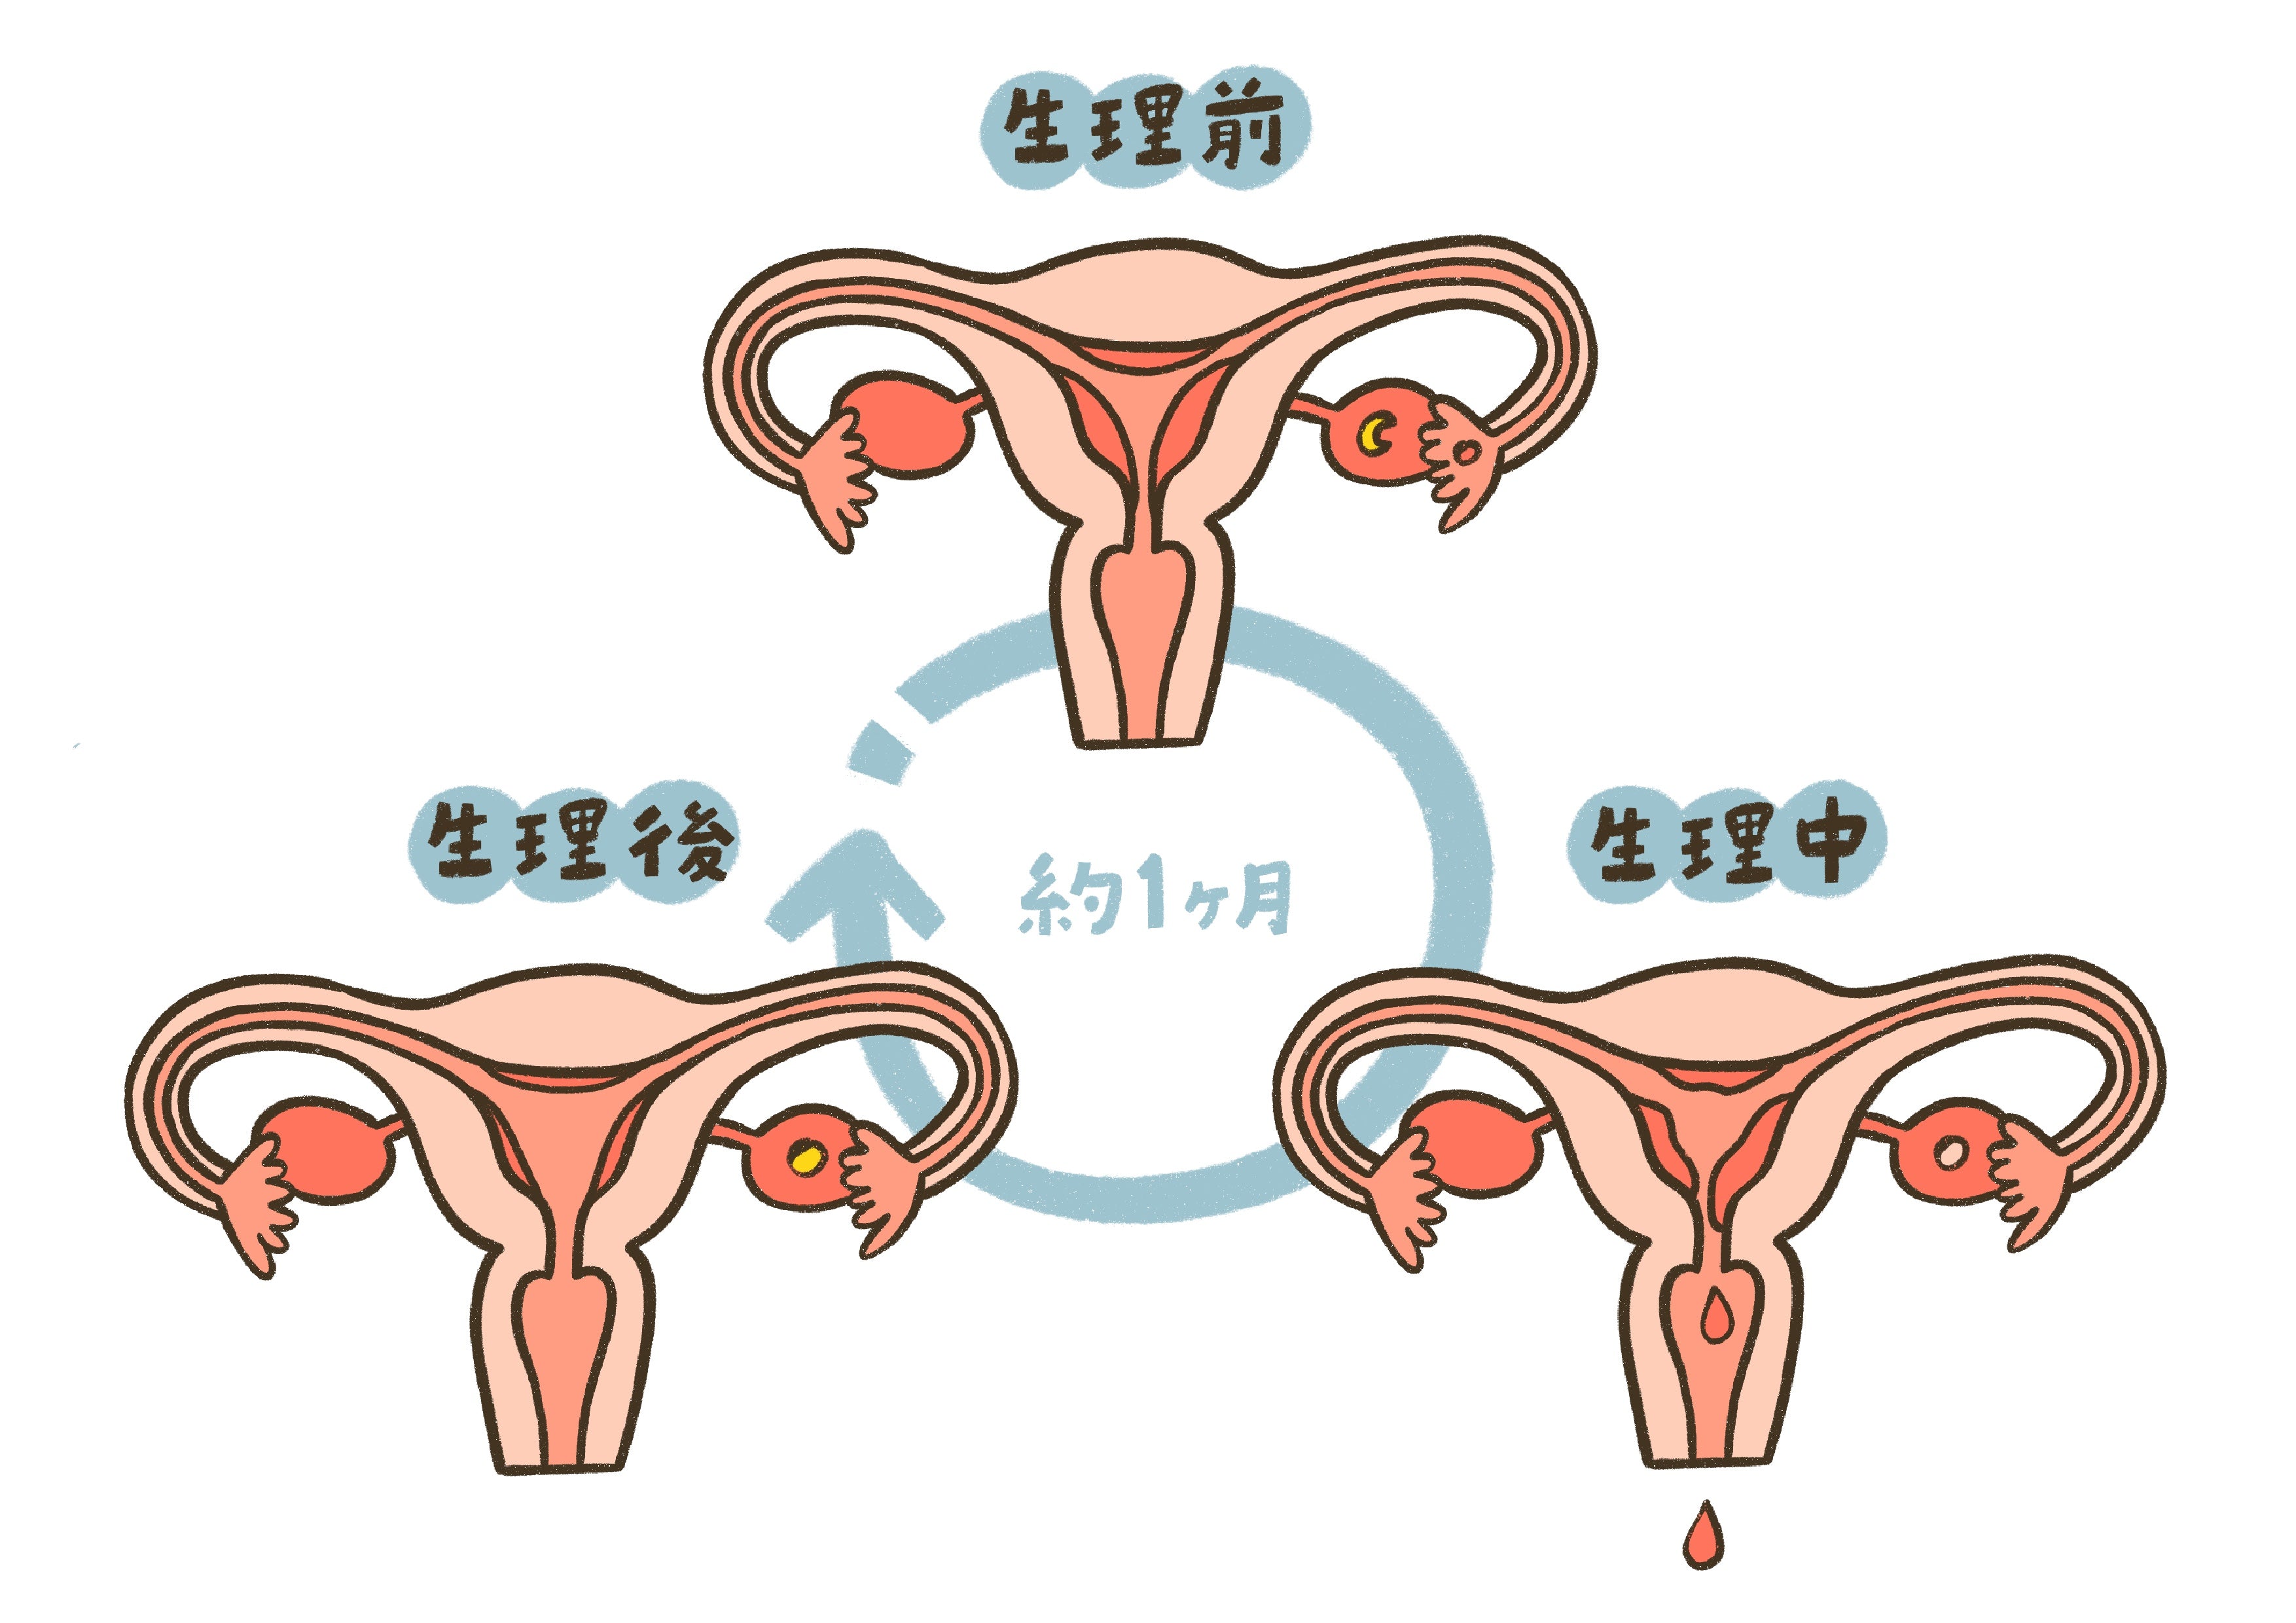 生理中や生理前後の子宮の状態